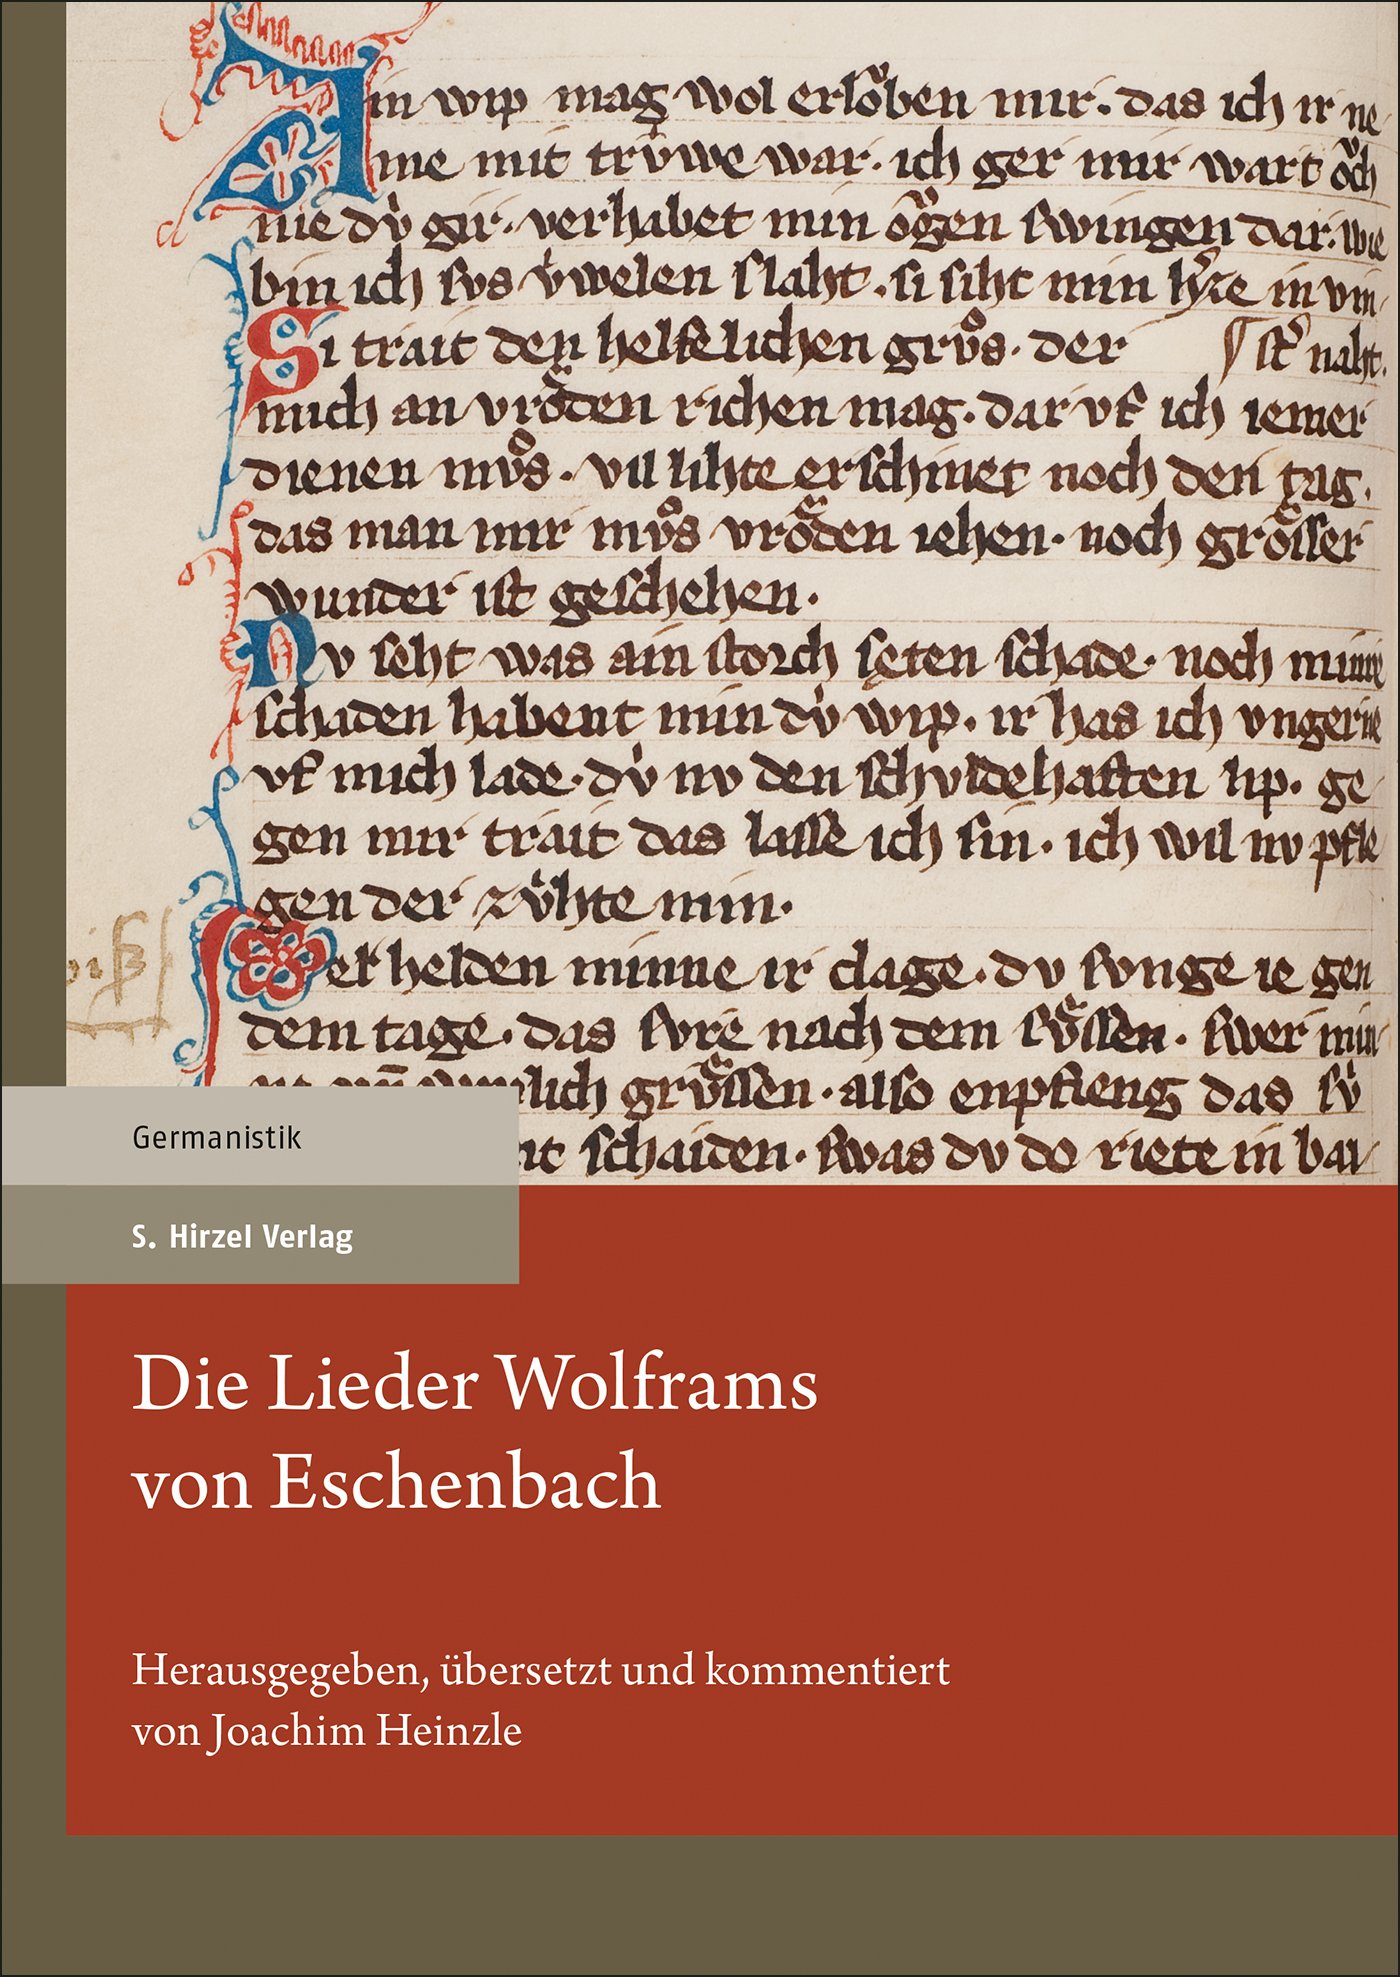 Die Lieder Wolframs von Eschenbach